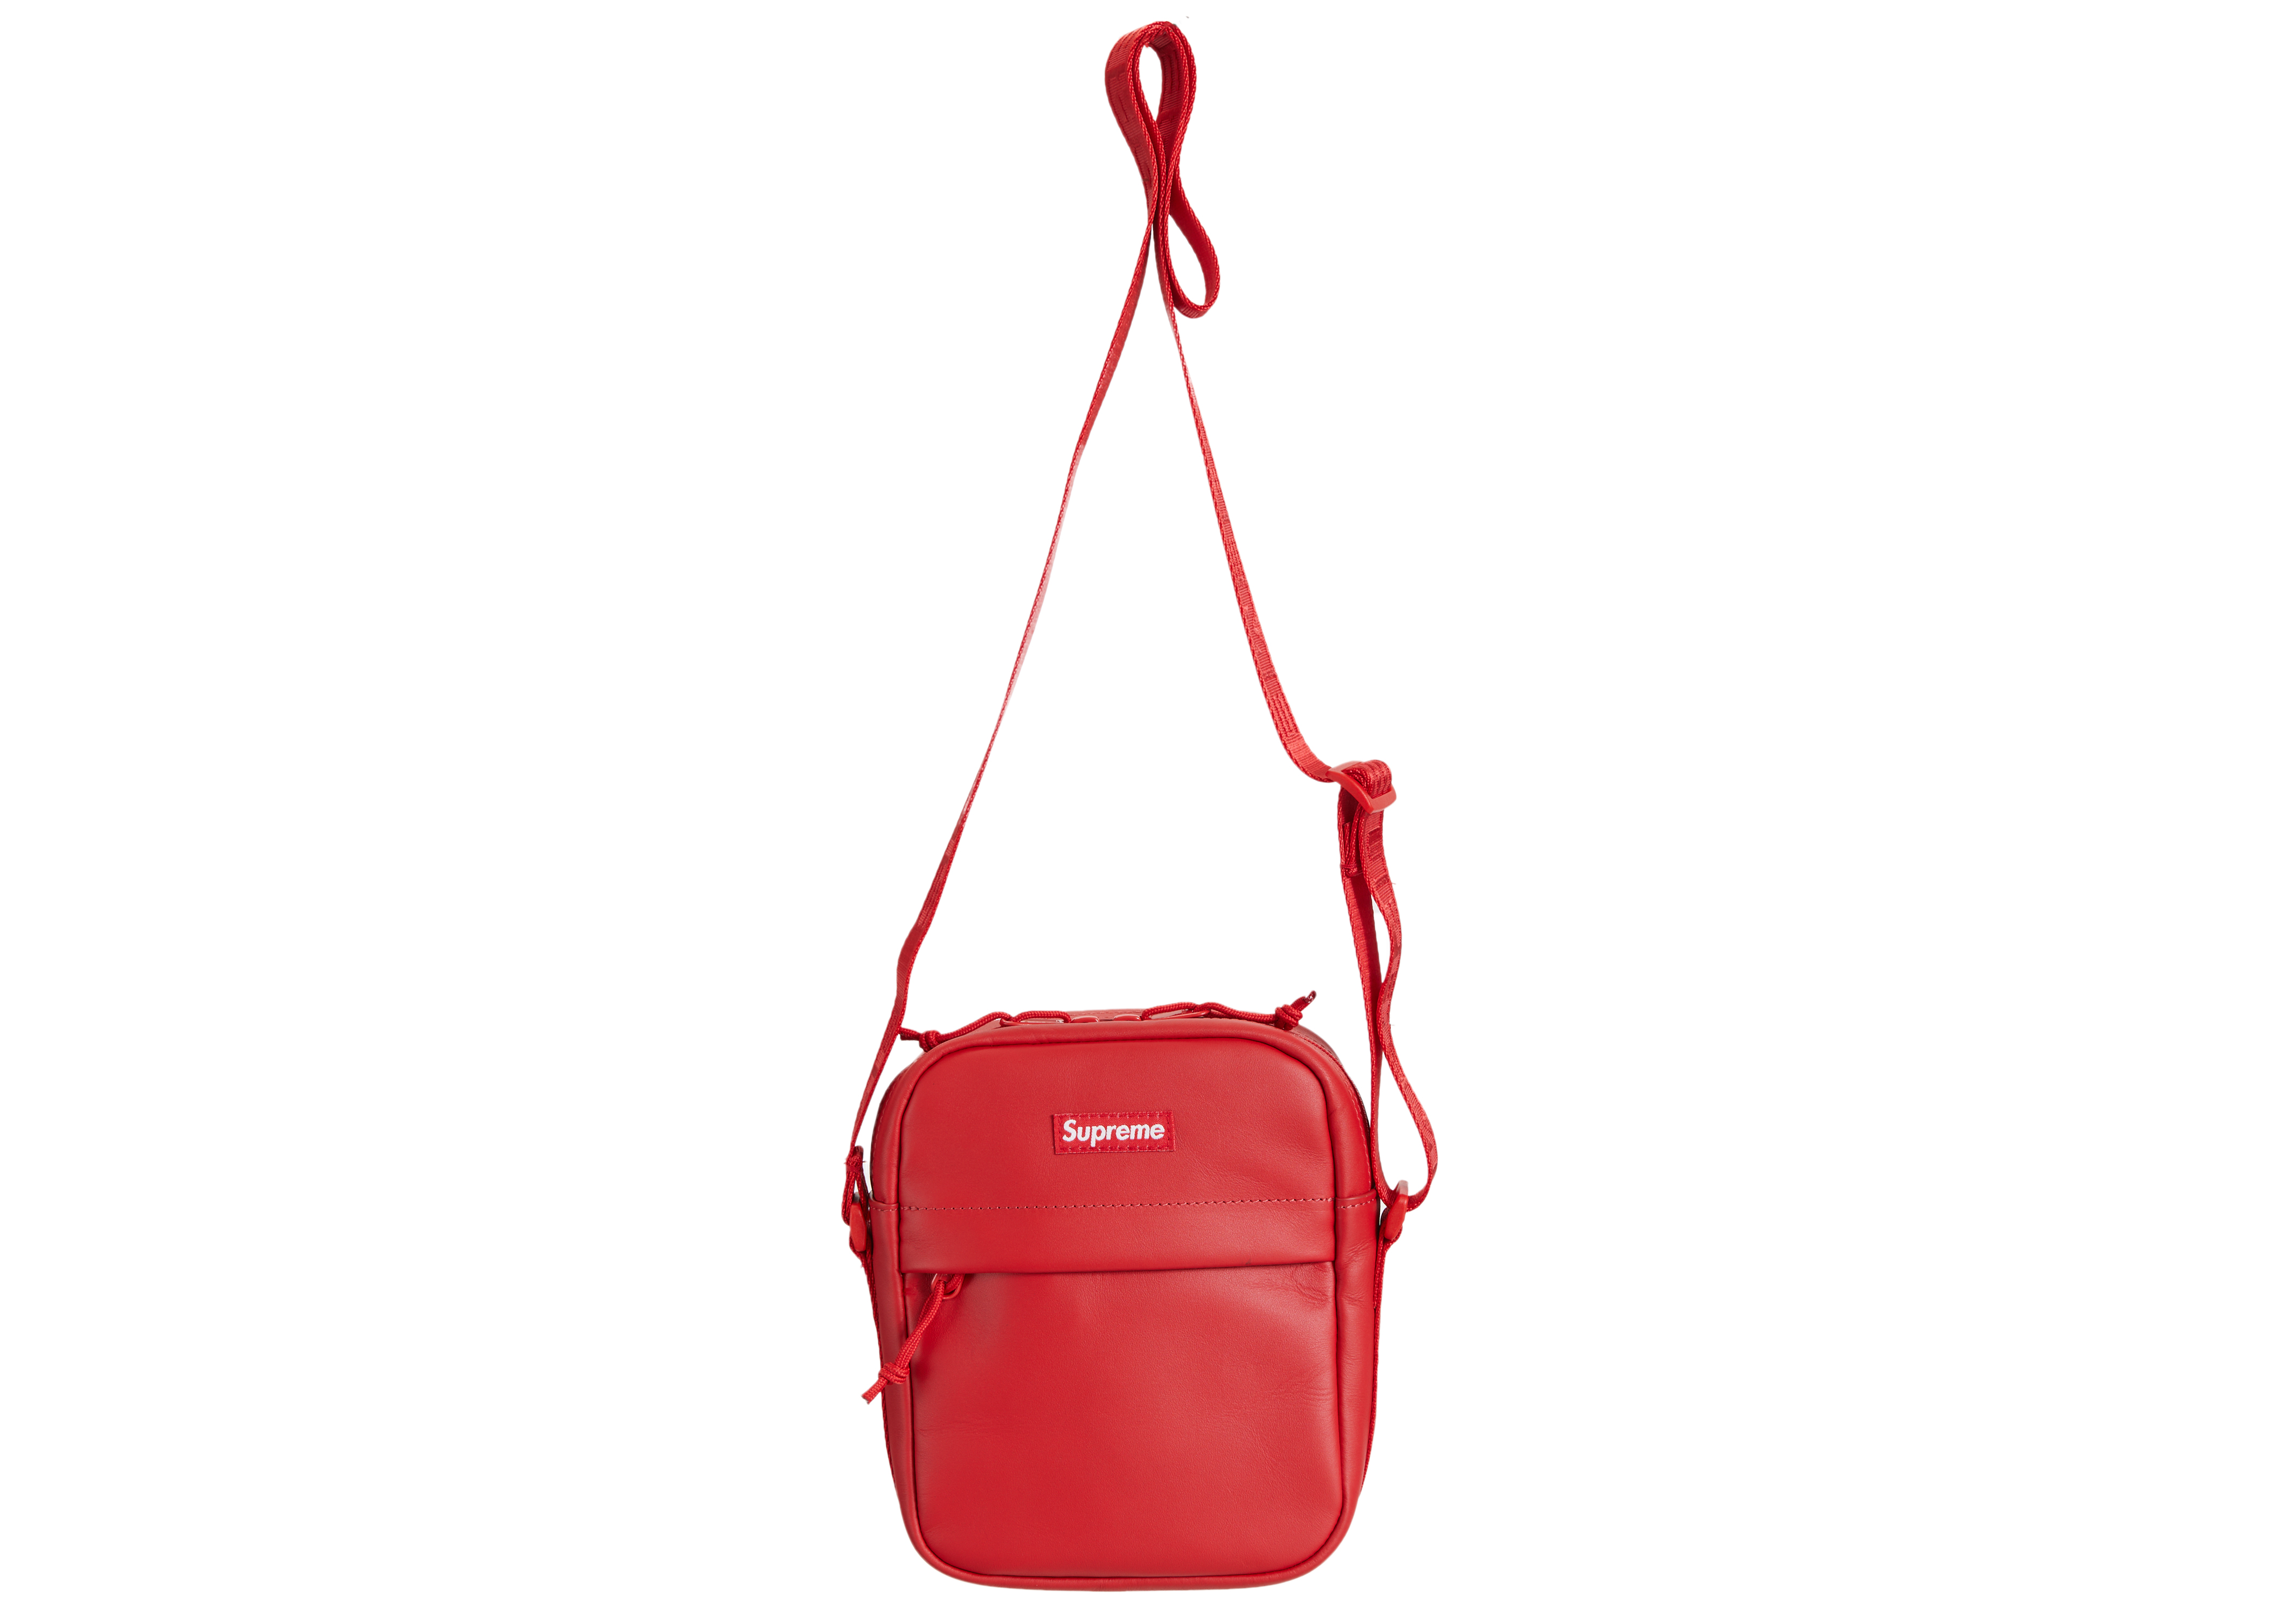 バッグSupreme Leather Shoulder Bag "Red"